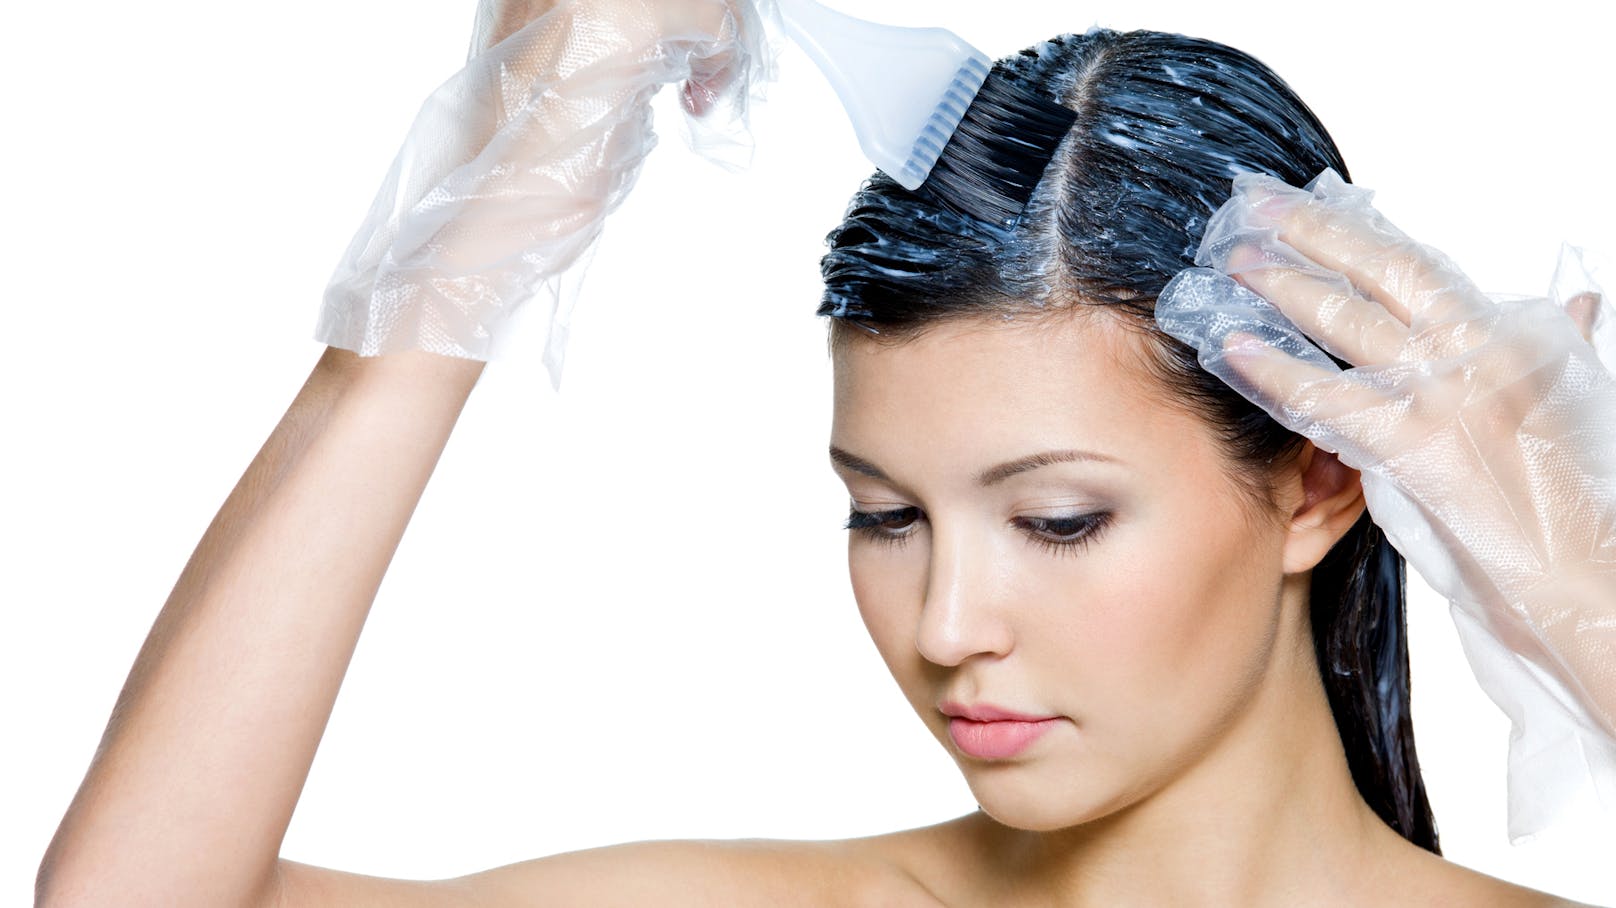 Welche gesundheitlichen Risiken birgt das Haarefärben?